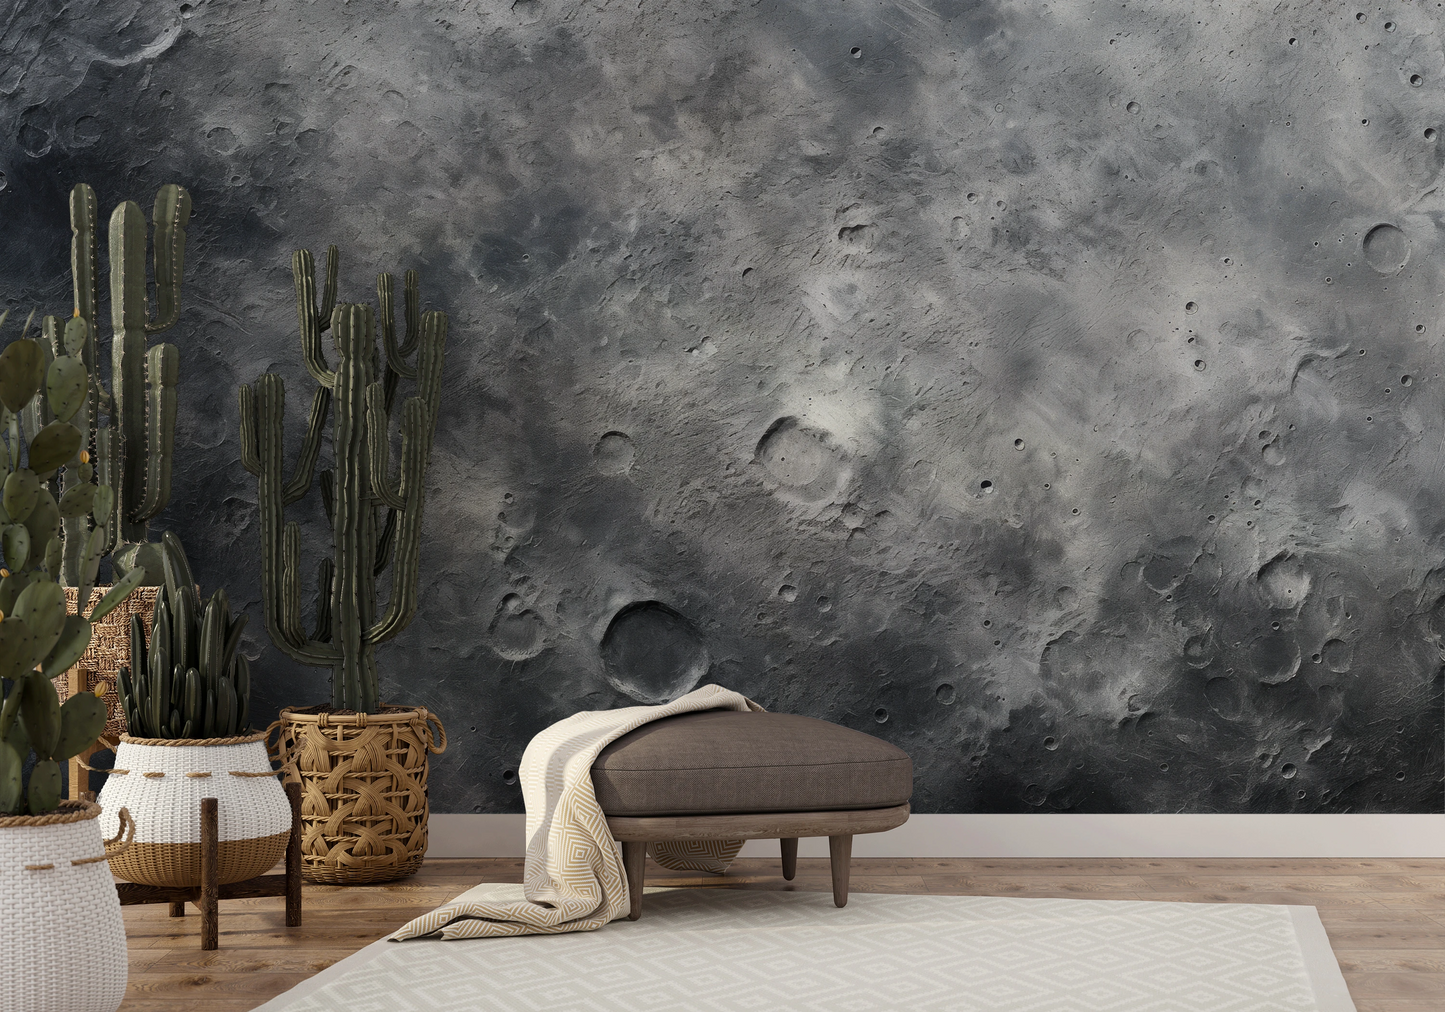 Zdjęcie prezentuje aranżację wnętrza z użyciem fototapety o nazwie Lunar Landscape #2 pokazanej w aranżacji wnętrza.